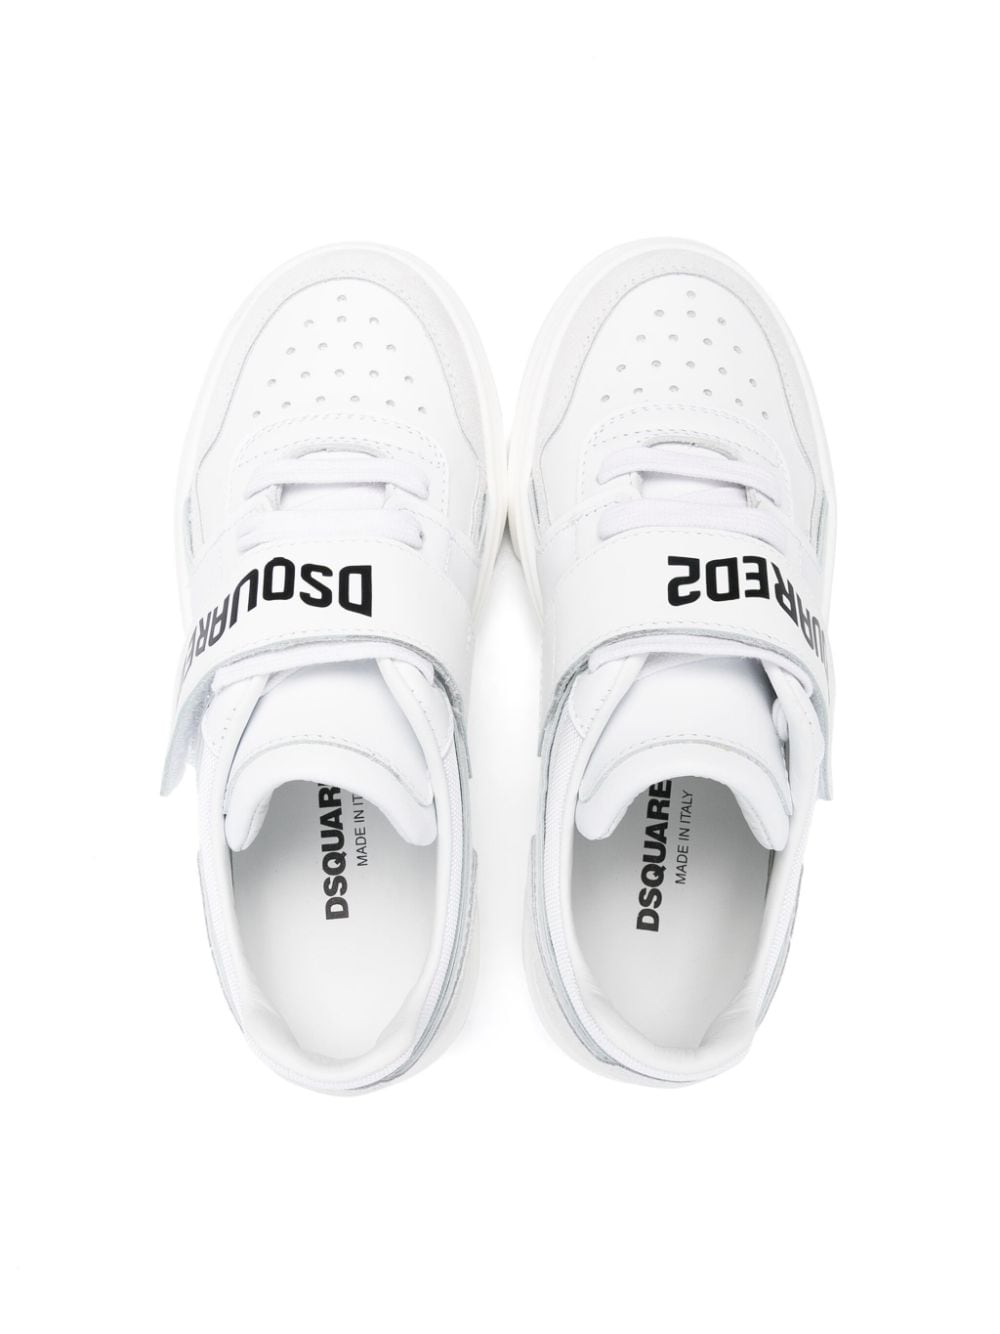 Sneakers bambino bianca/nera